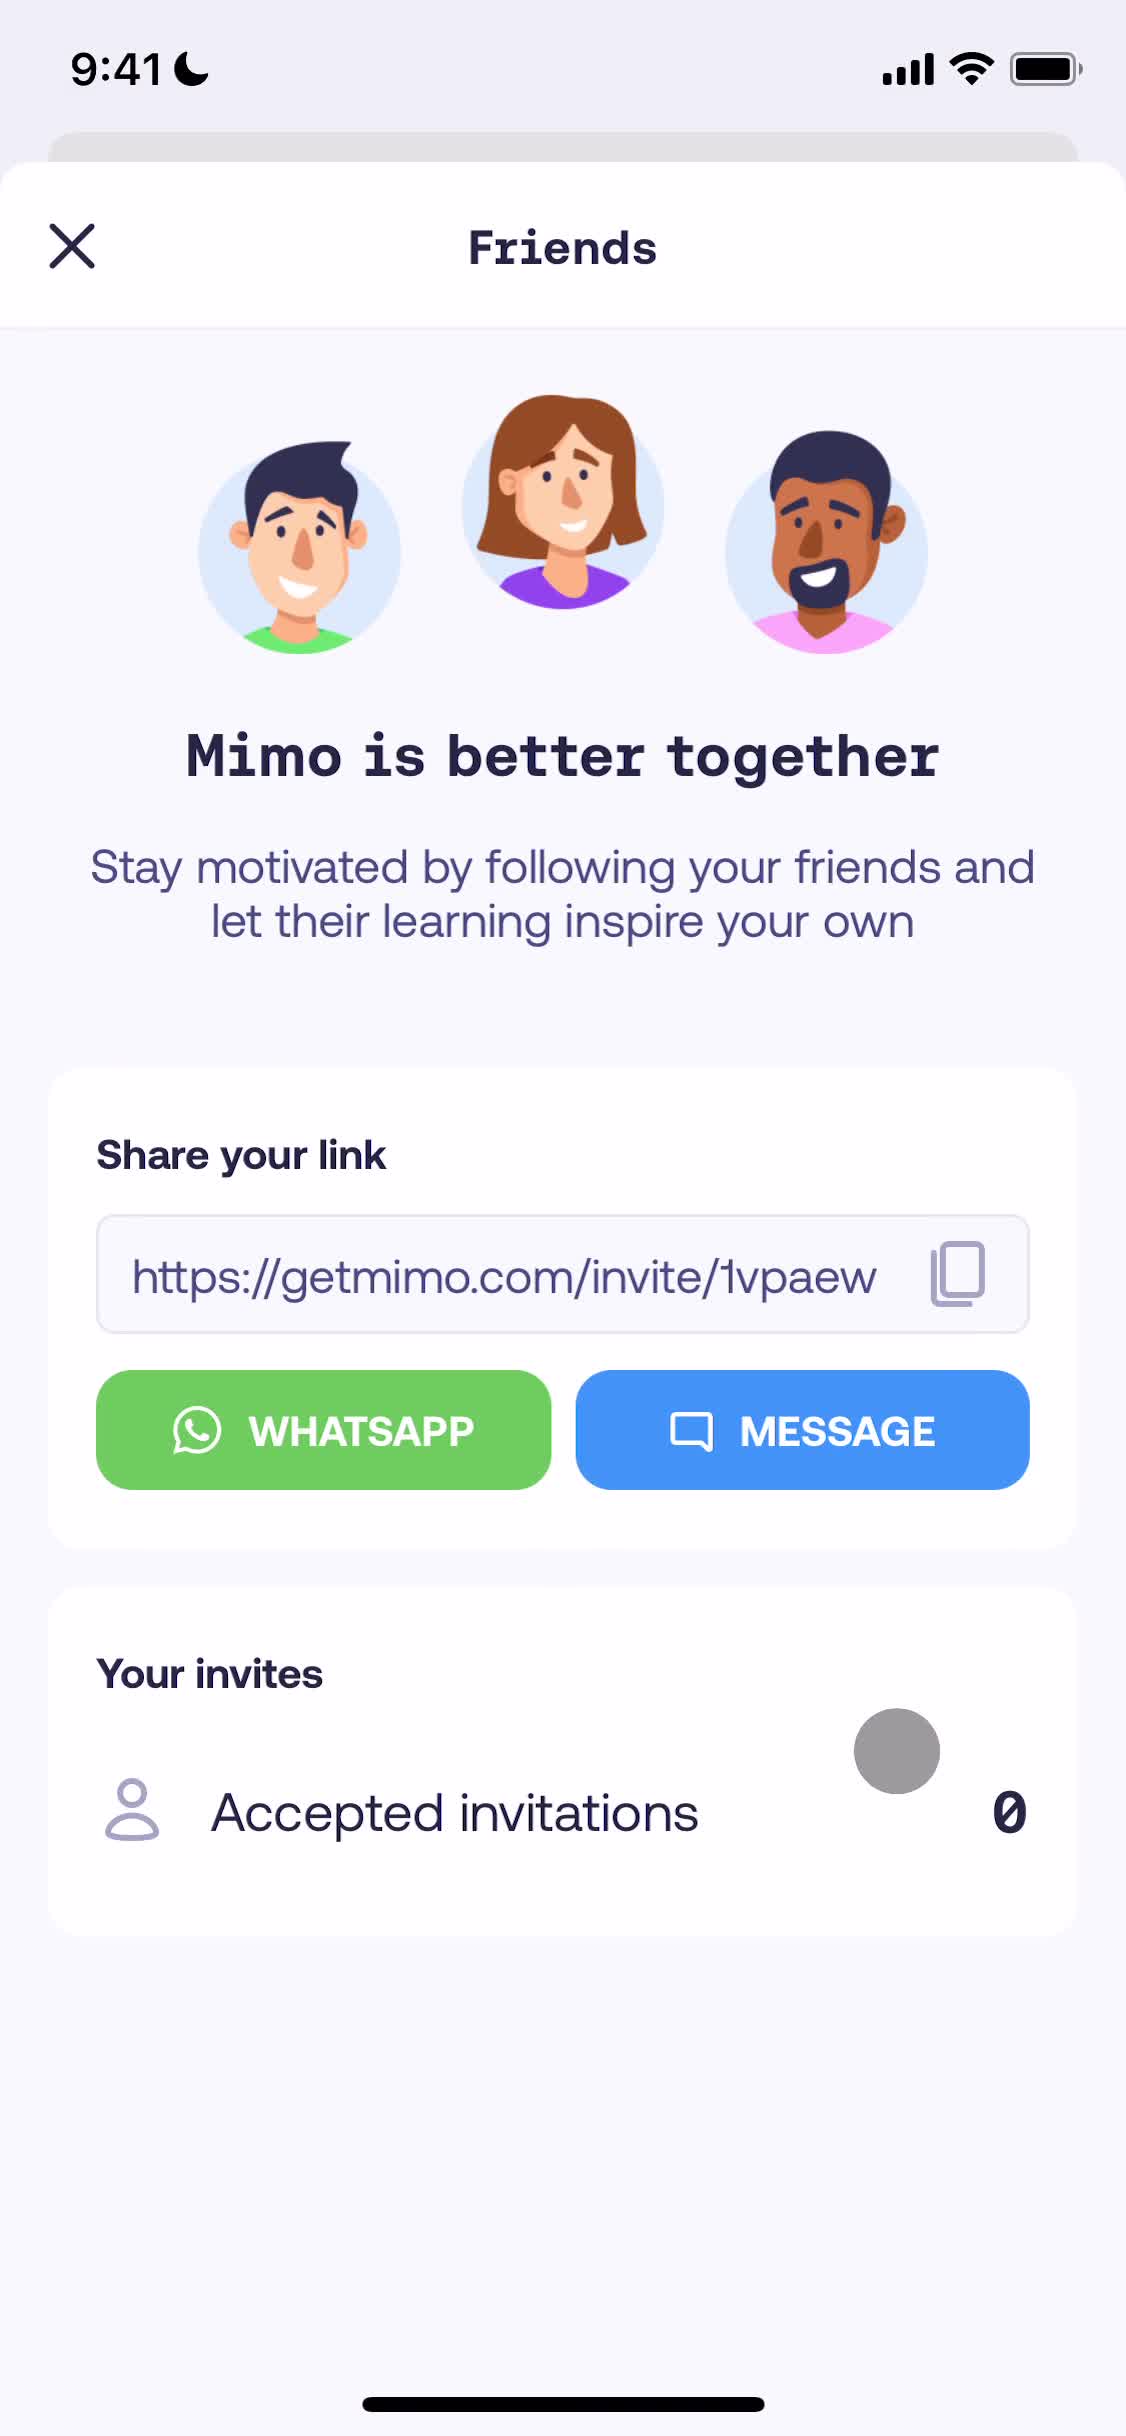 Mimo invite friends screenshot